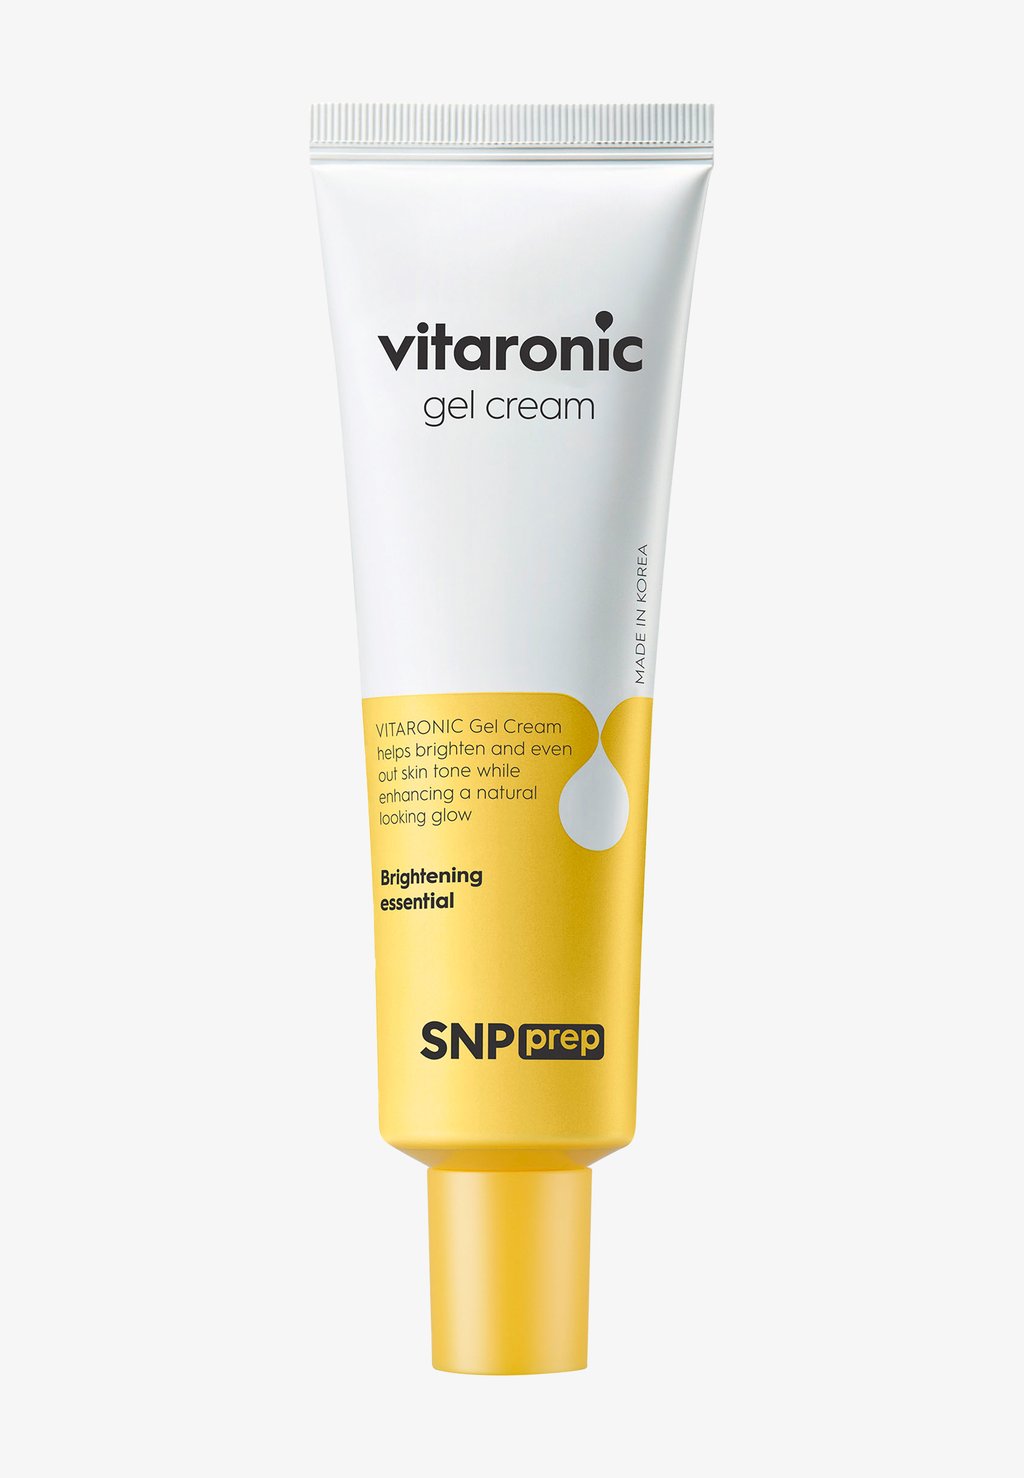 Крем для лица VITARONIC GEL CREAM SNP крем гель для лица с витамином с snp prep vitaronic gel cream 50 мл